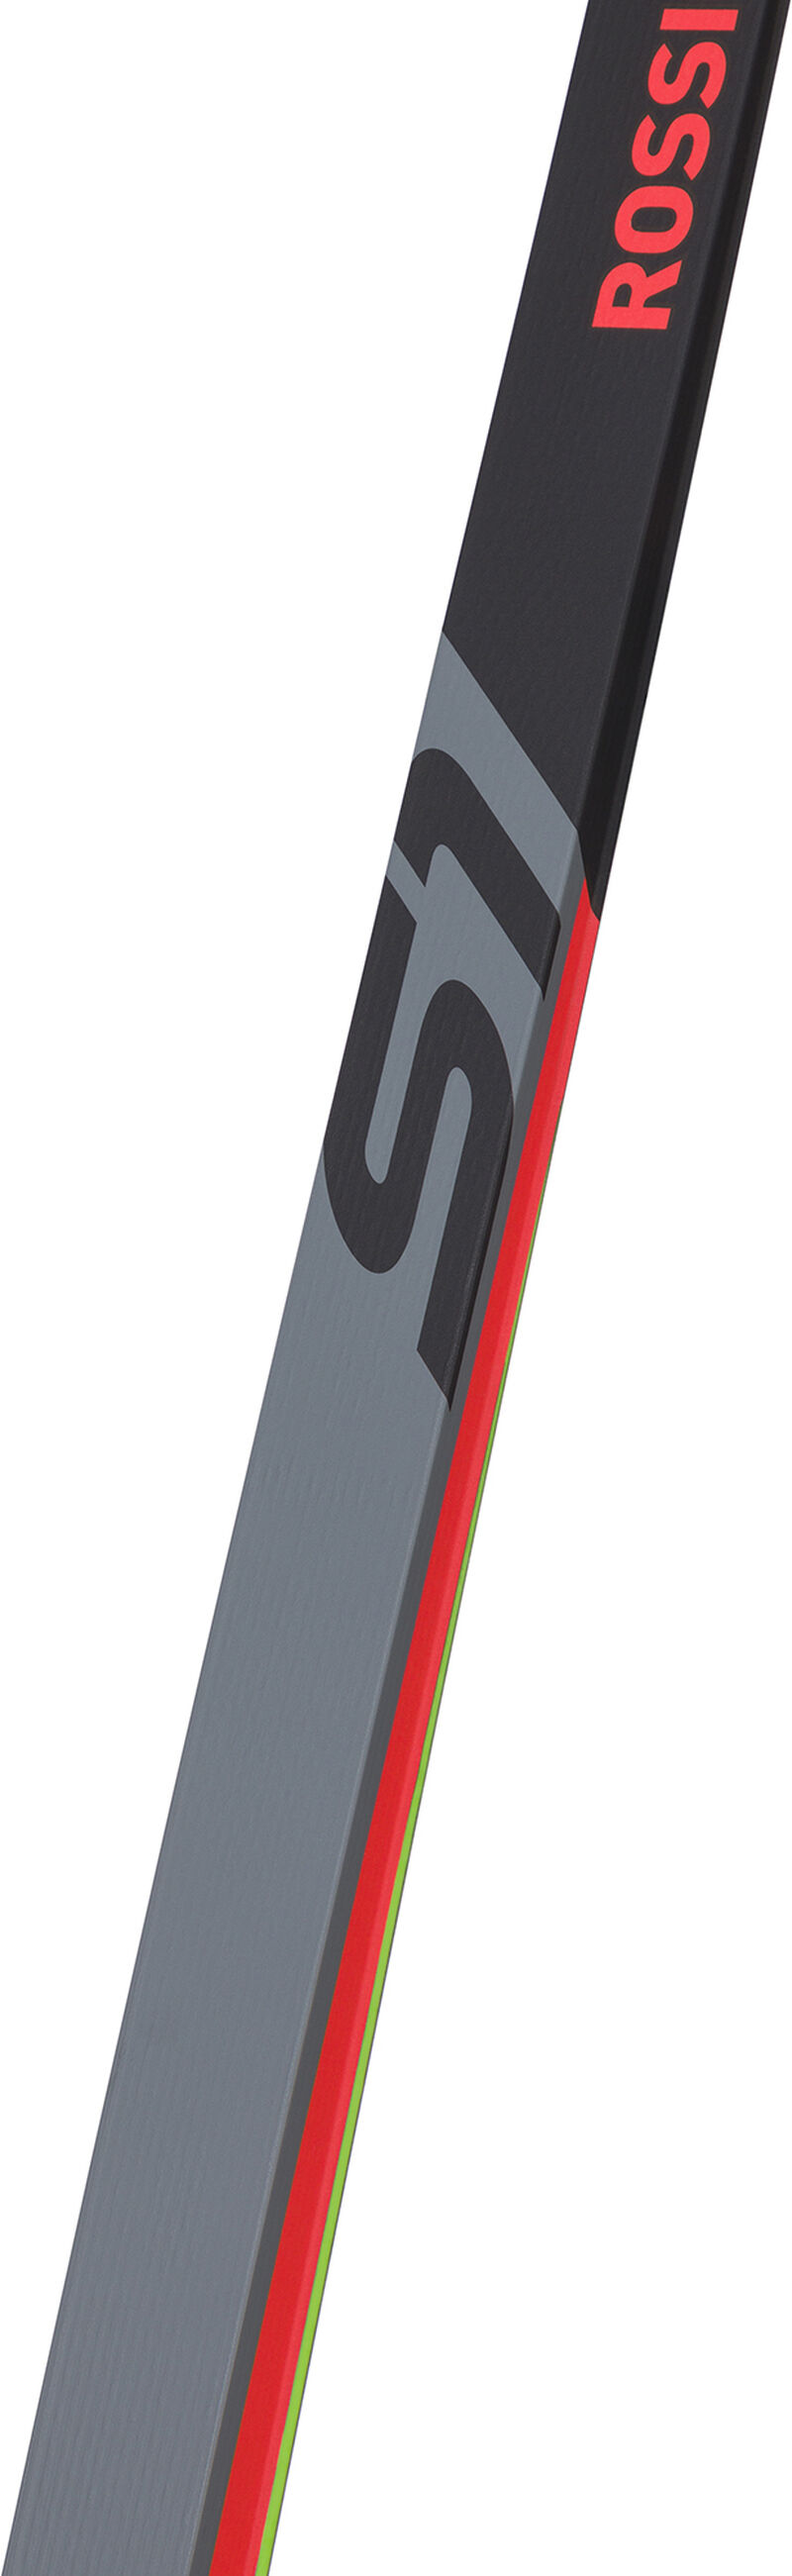 Unisex Nordic Racing Skis X-IUM SKATING PREMIUM+ S1 MEDIUM